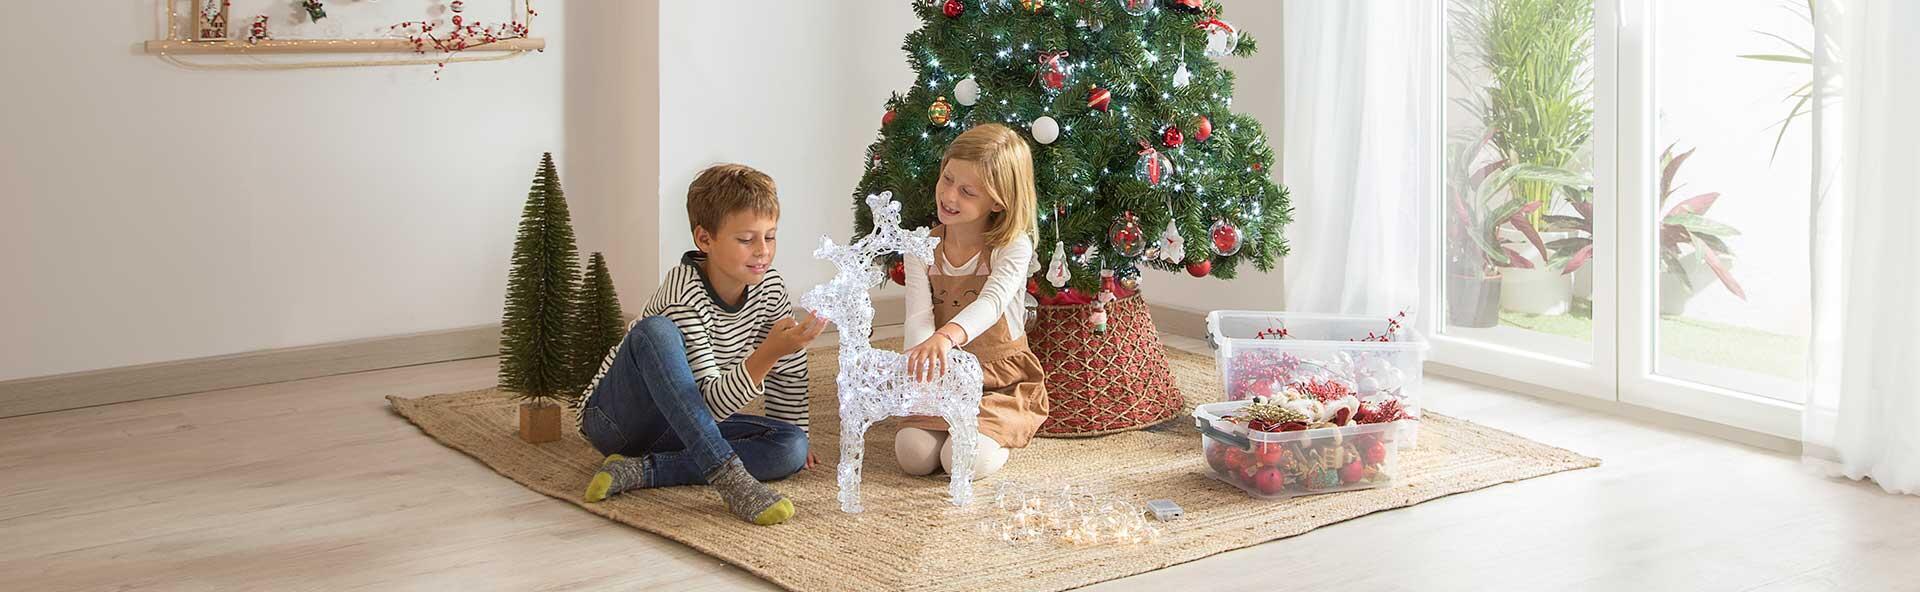 Um Pesadelo de Natal: Arrumar as decorações | Leroy Merlin